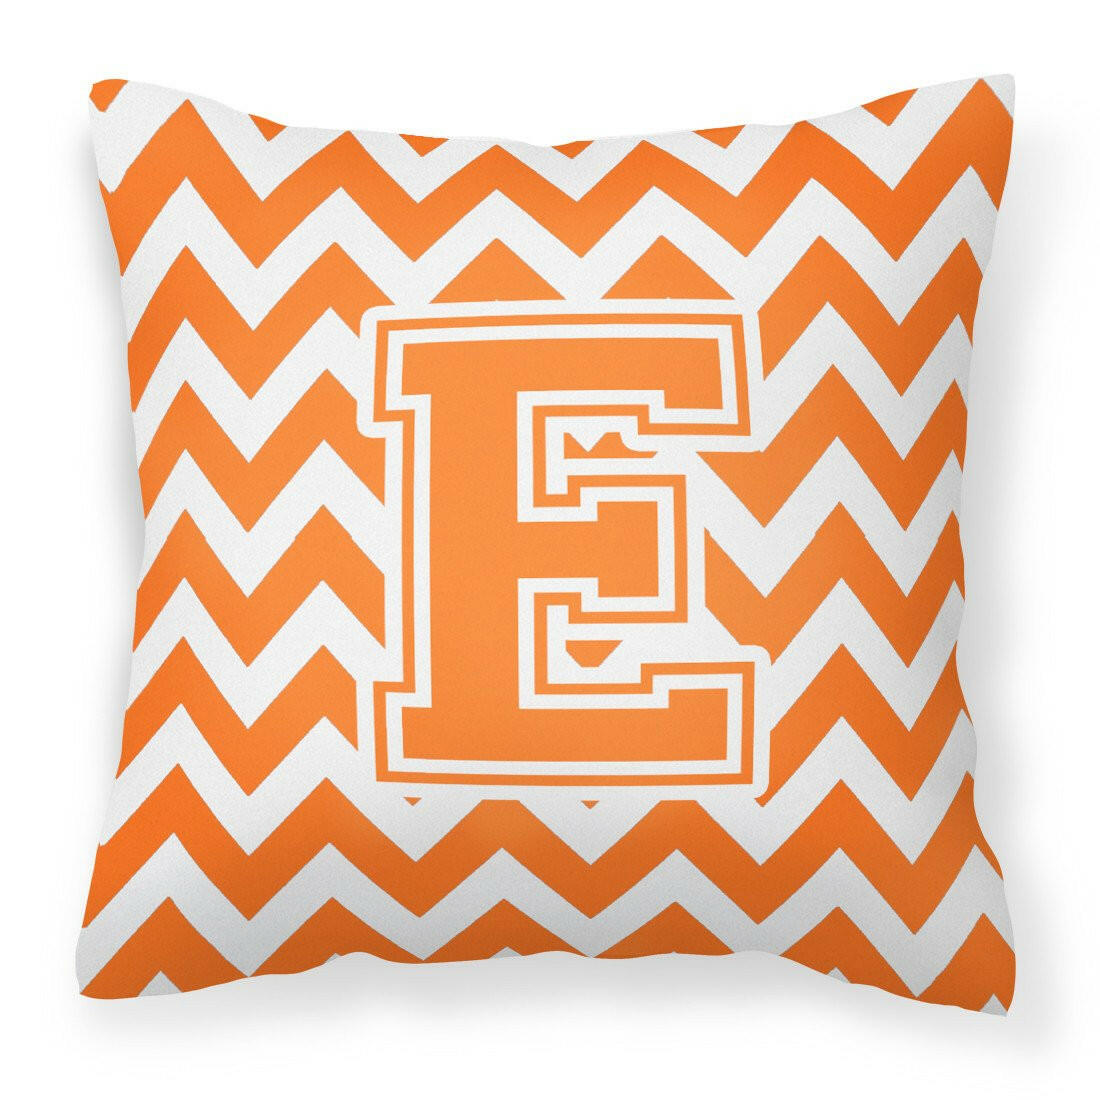 Letter E Chevron Orange and White Fabric Decorative Pillow CJ1046-EPW1414 by Caroline&#39;s Treasures